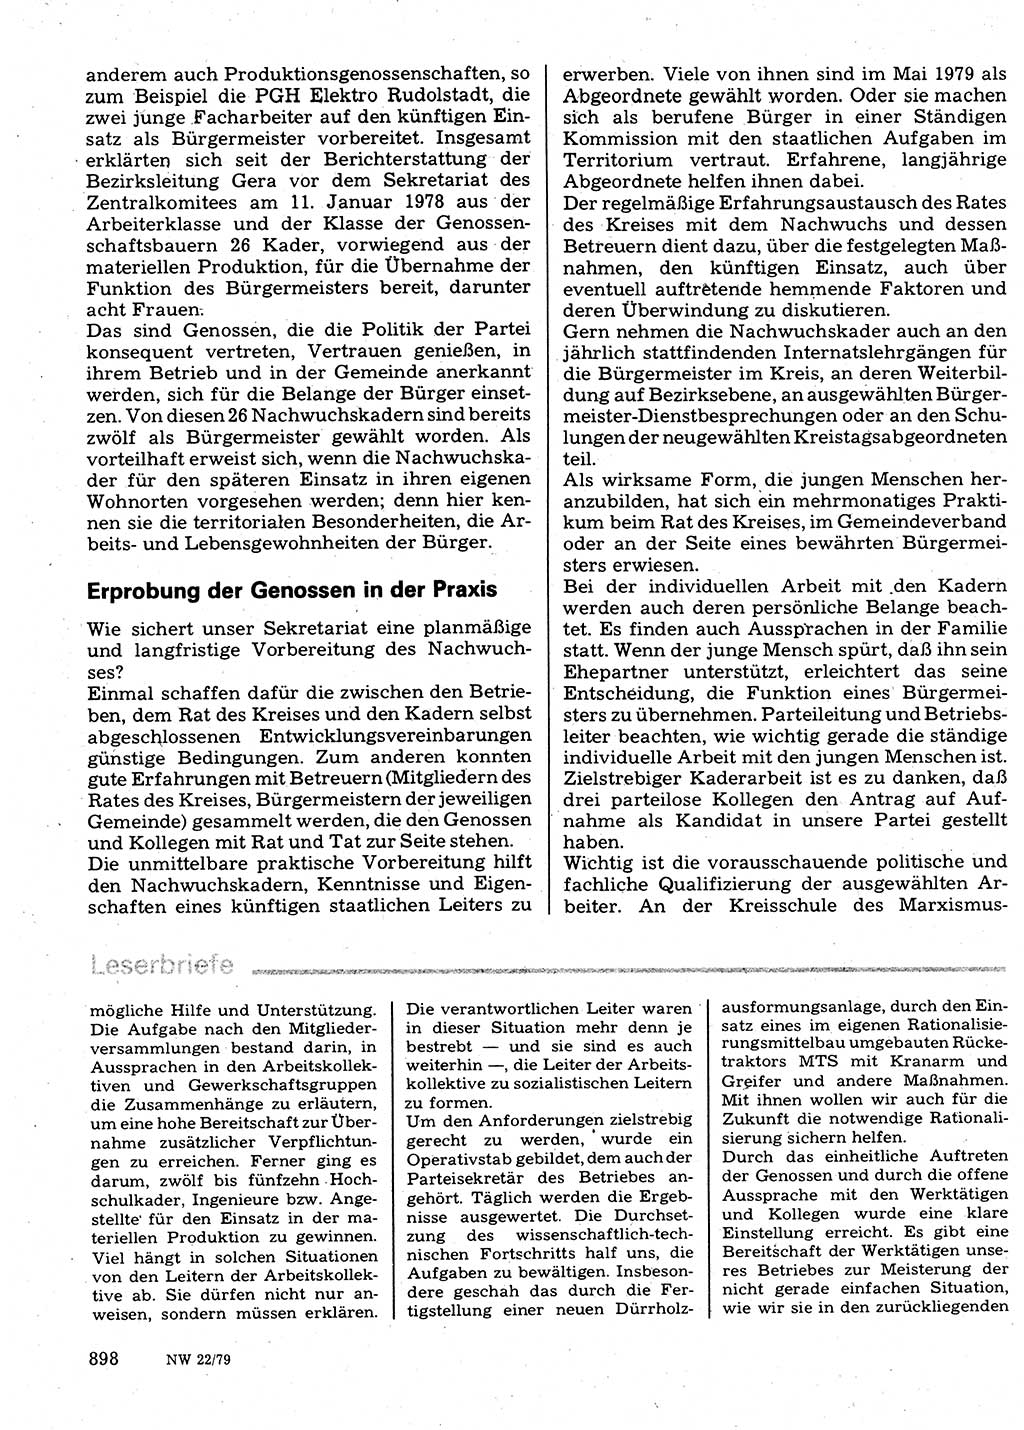 Neuer Weg (NW), Organ des Zentralkomitees (ZK) der SED (Sozialistische Einheitspartei Deutschlands) für Fragen des Parteilebens, 34. Jahrgang [Deutsche Demokratische Republik (DDR)] 1979, Seite 898 (NW ZK SED DDR 1979, S. 898)